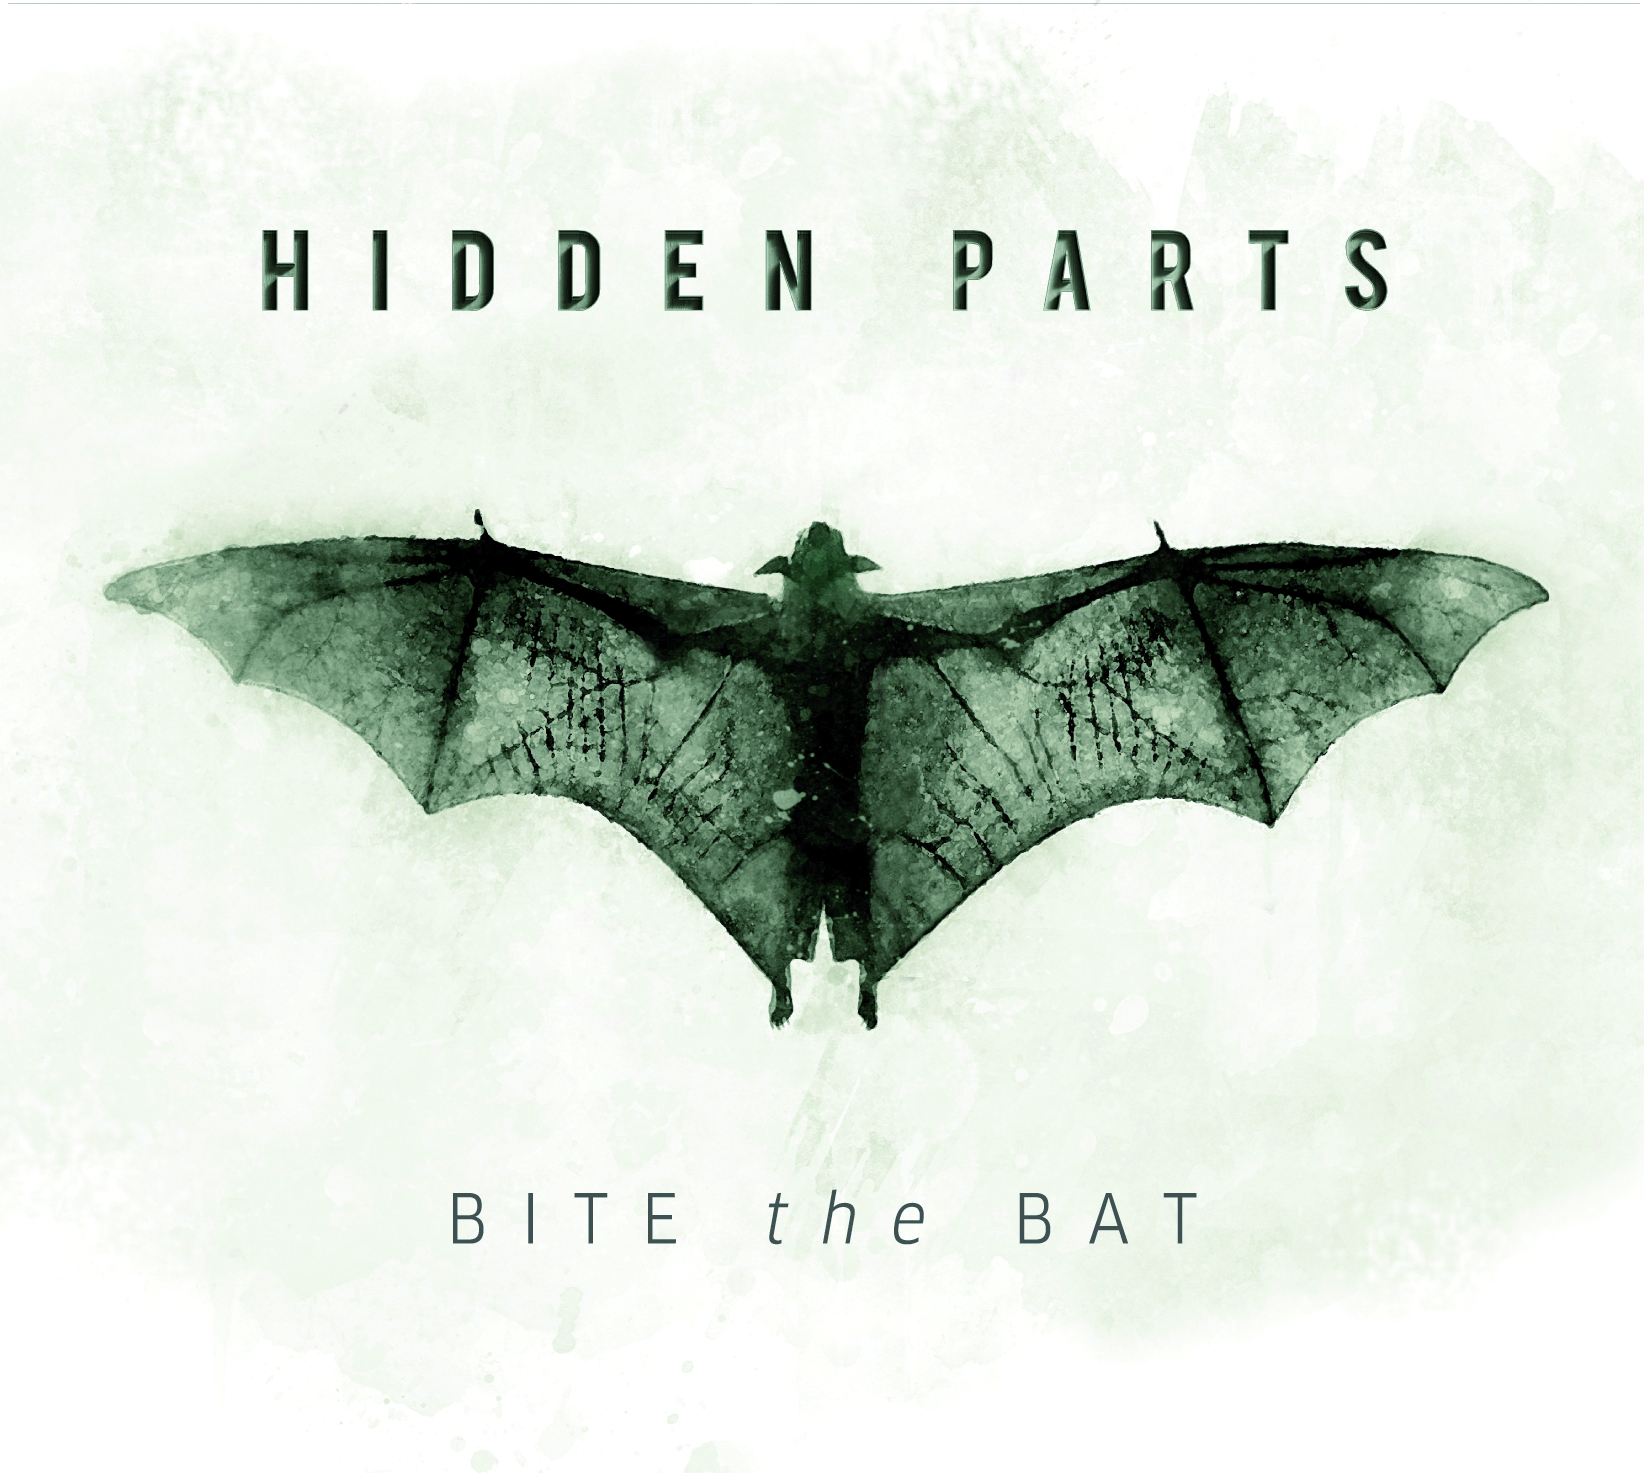 HIDDEN PARTS - Bite the bat